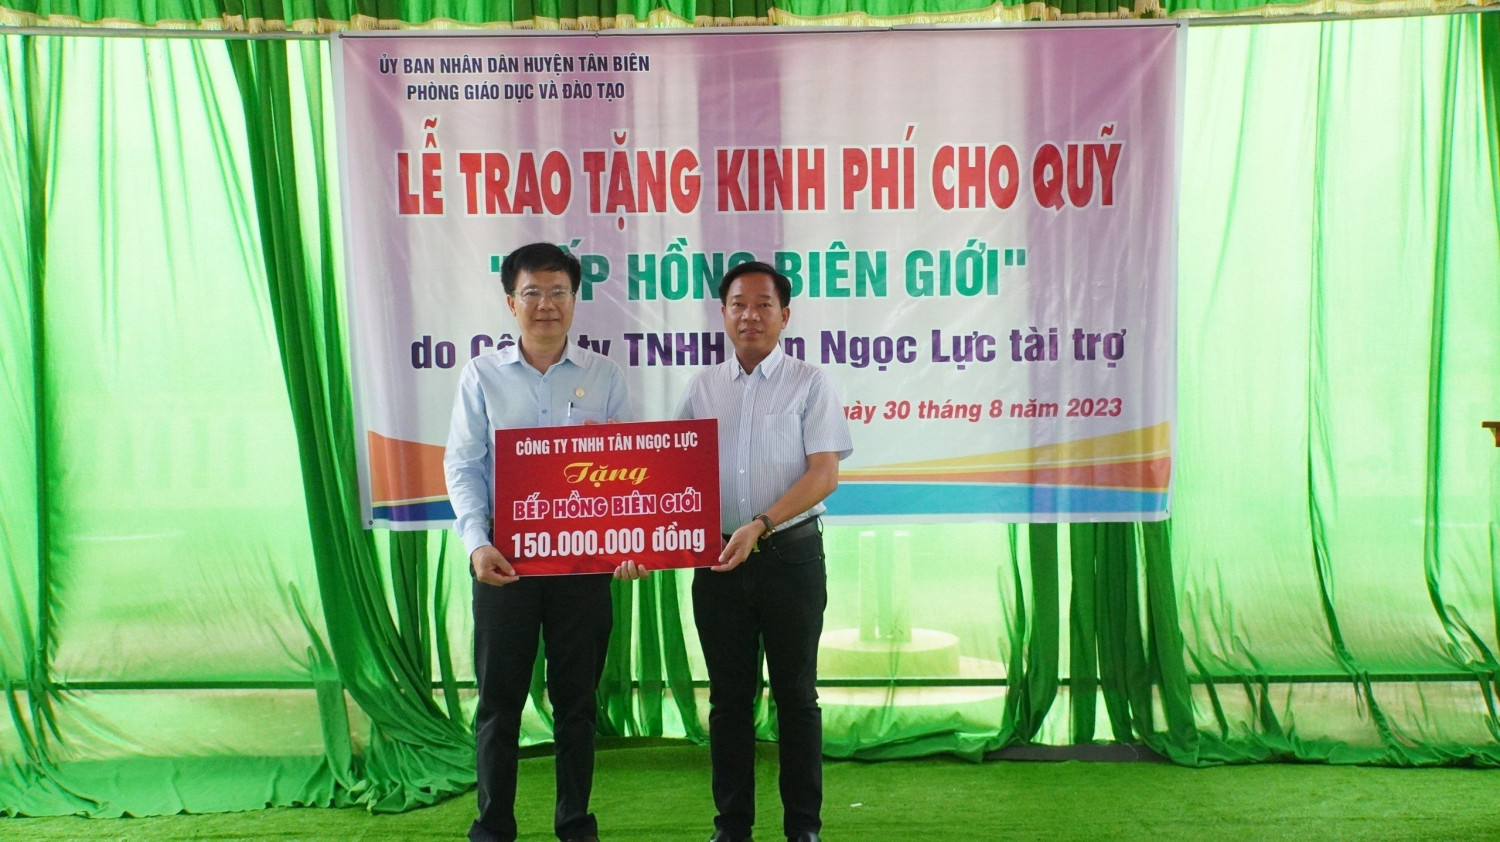 Công ty TNHH Tân Ngọc Lực trao tặng kinh phí cho quỹ “bếp hồng biên giới”